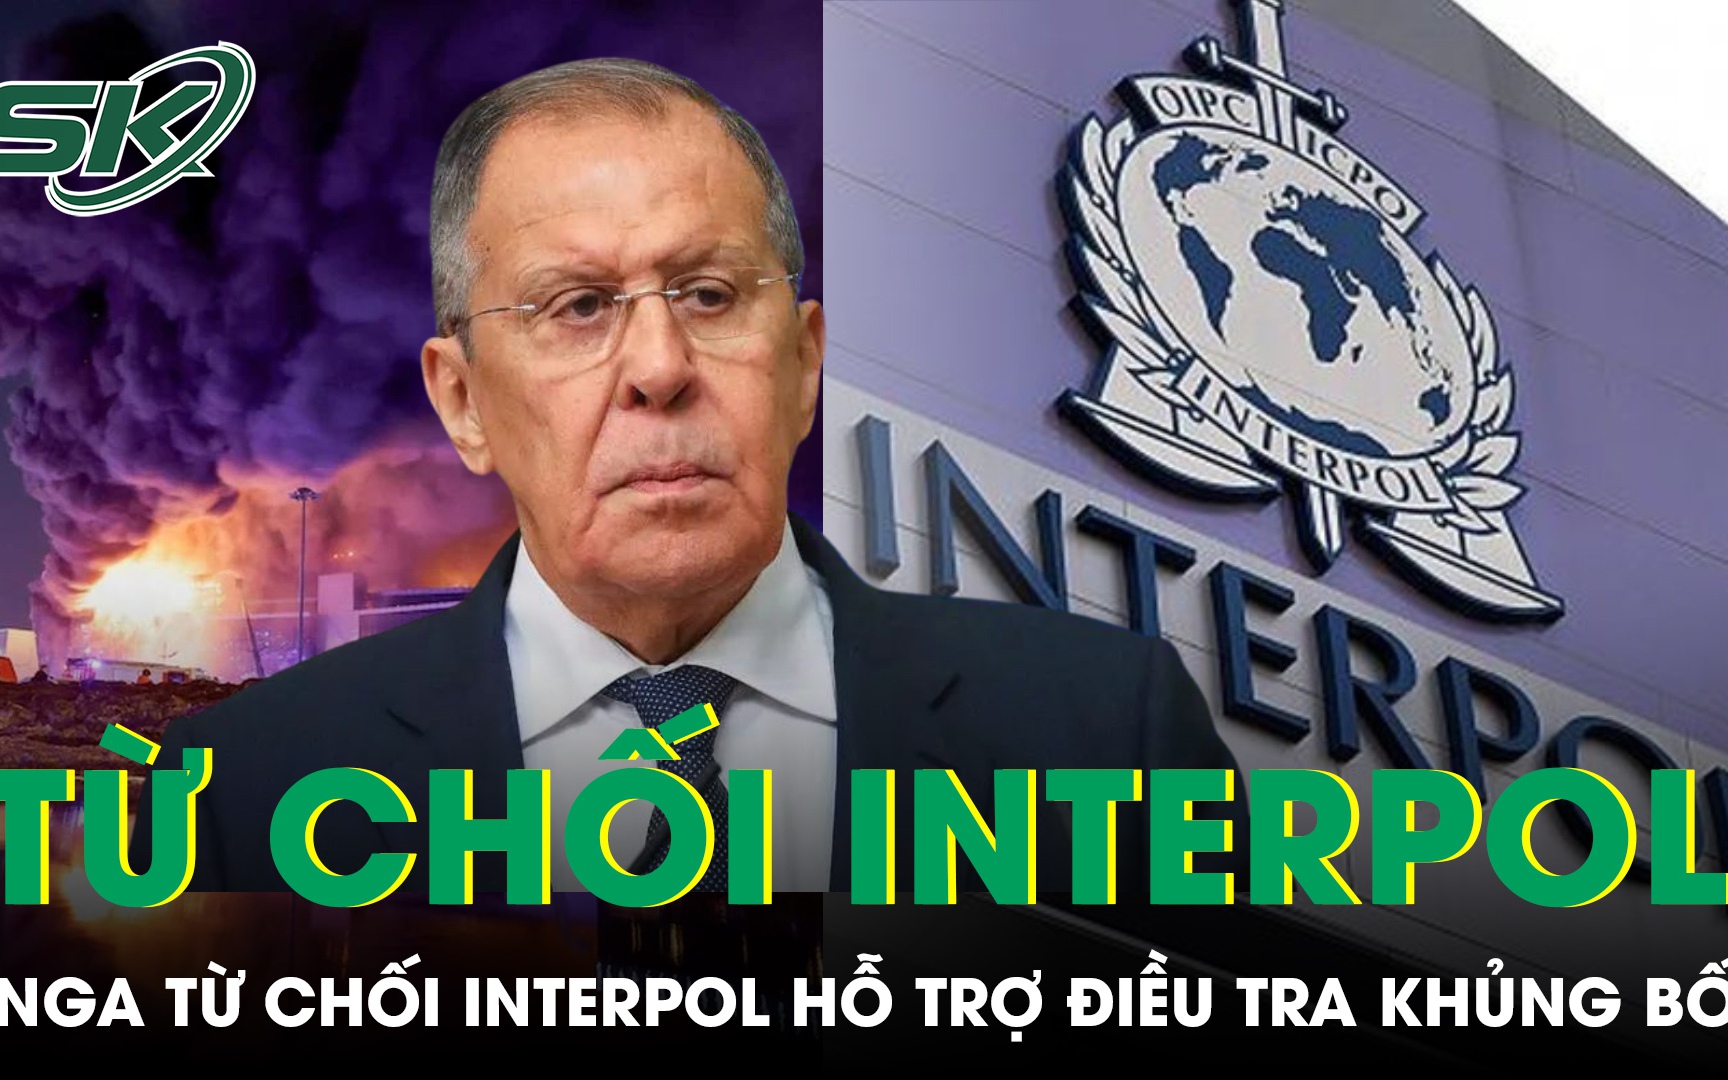 Nga từ chối Interpol hỗ trợ điều tra vụ khủng bố ở Moscow